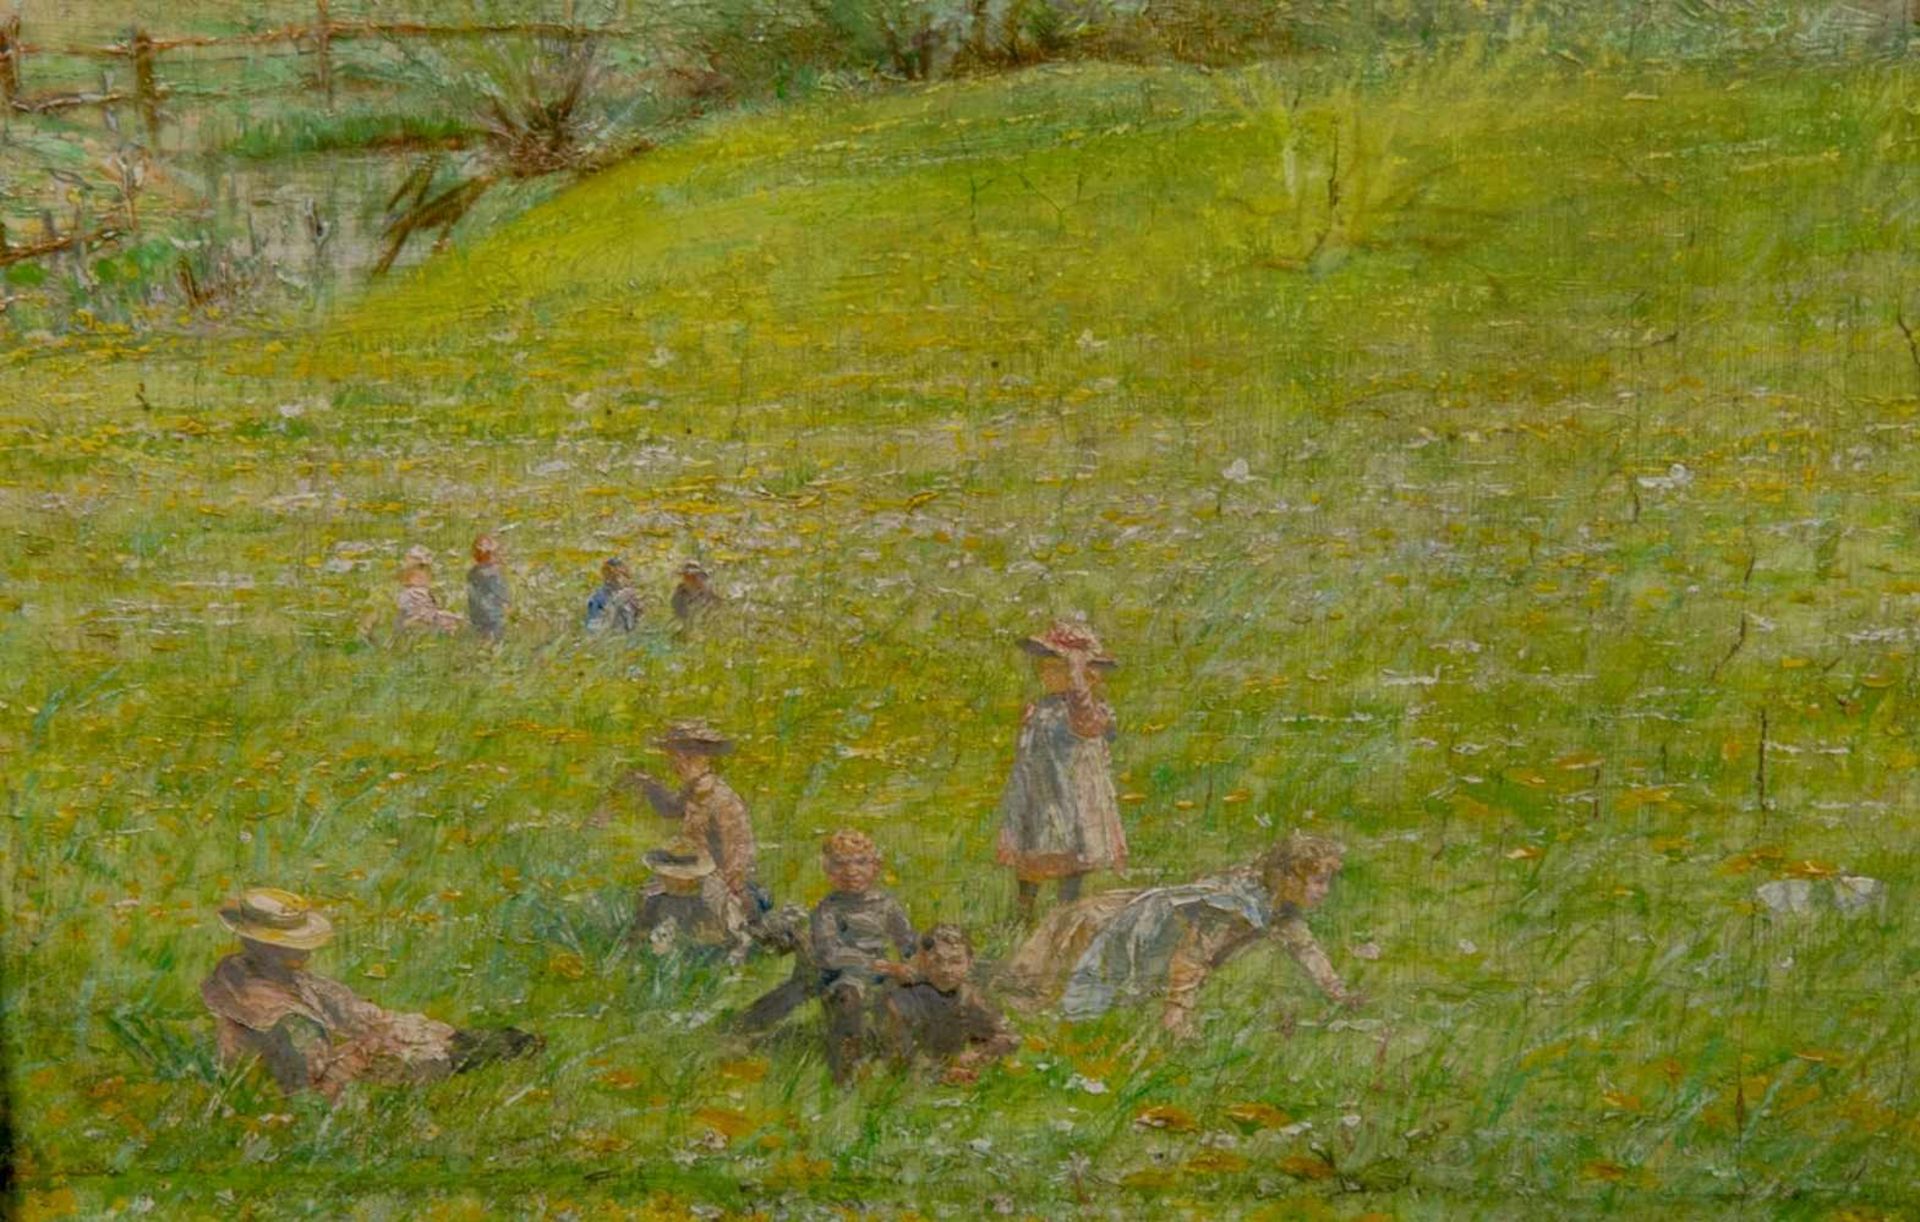 "Spielende Kinder" in Wiesenlandschaft, Gemälde, Öl auf Leinwand, undeutlich signiert "Homeyer Mai - Bild 5 aus 6